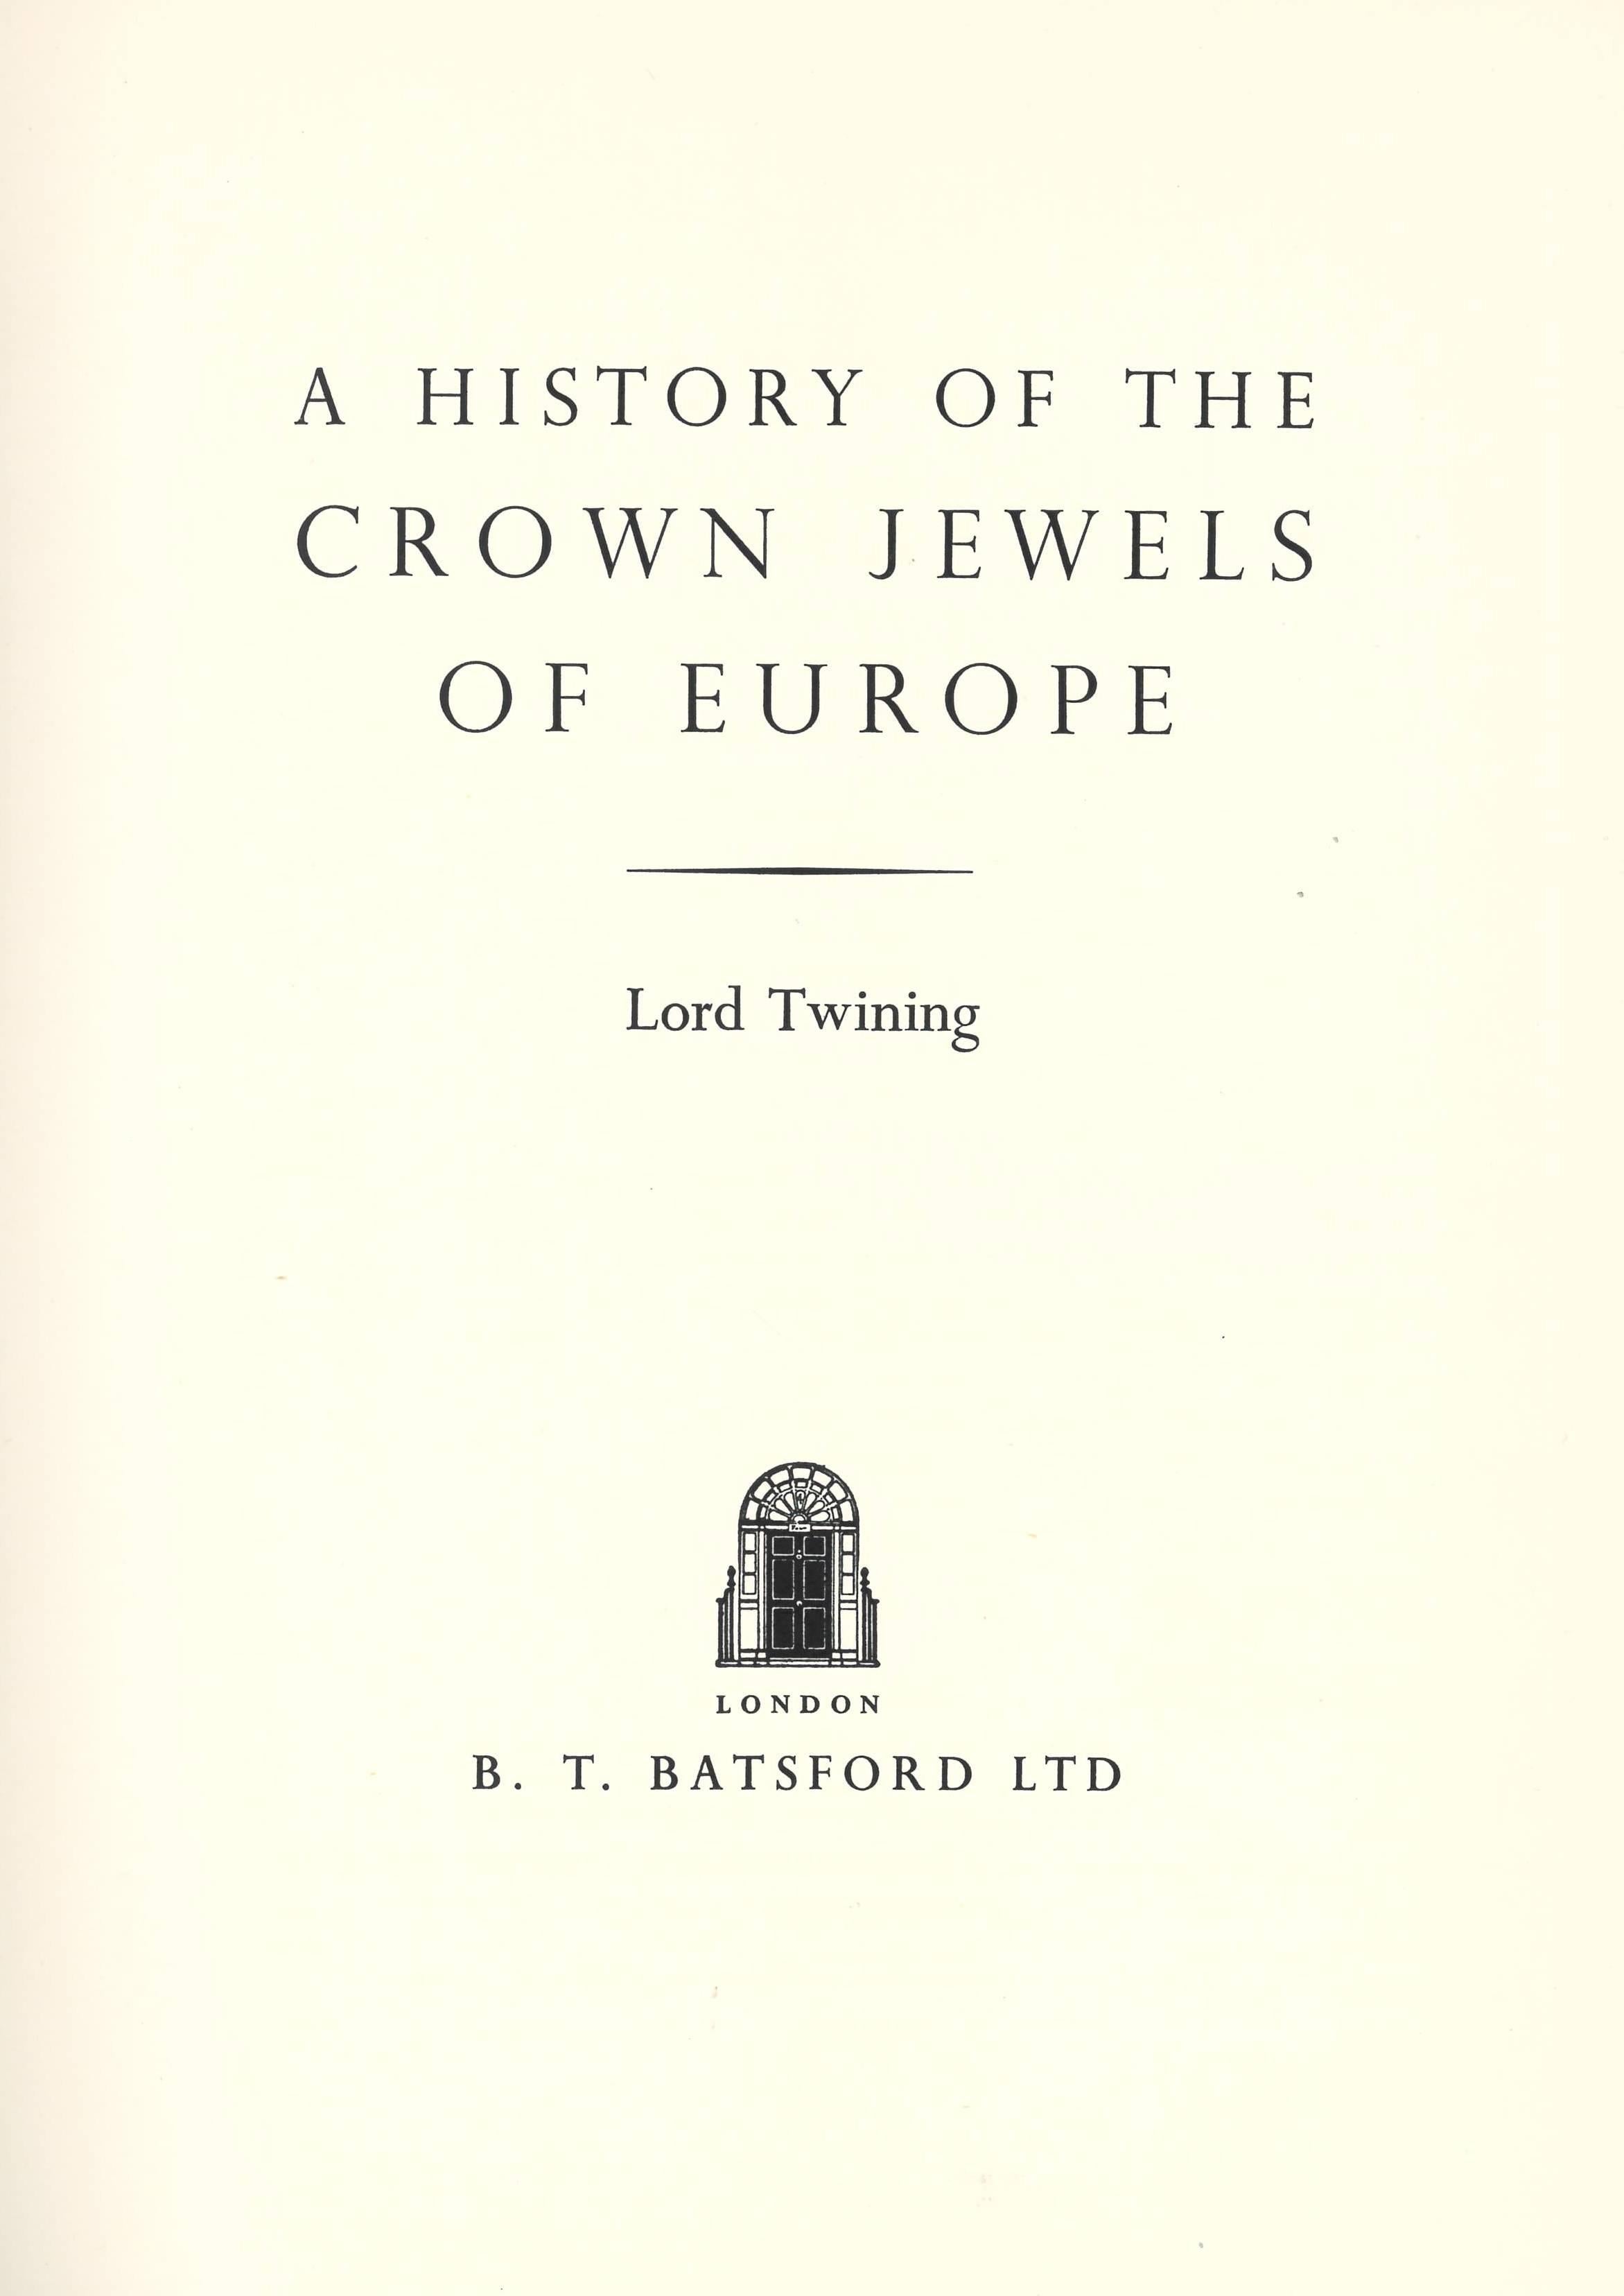 Dieses von Lord Twining verfasste Buch ist ein wahrhaft monumentales Werk, das sich umfassend mit der Geschichte der europäischen Insignien und Kronjuwelen befasst. Es deckt einen Zeitraum von siebzehn Jahrhunderten ab, und die Informationen sind